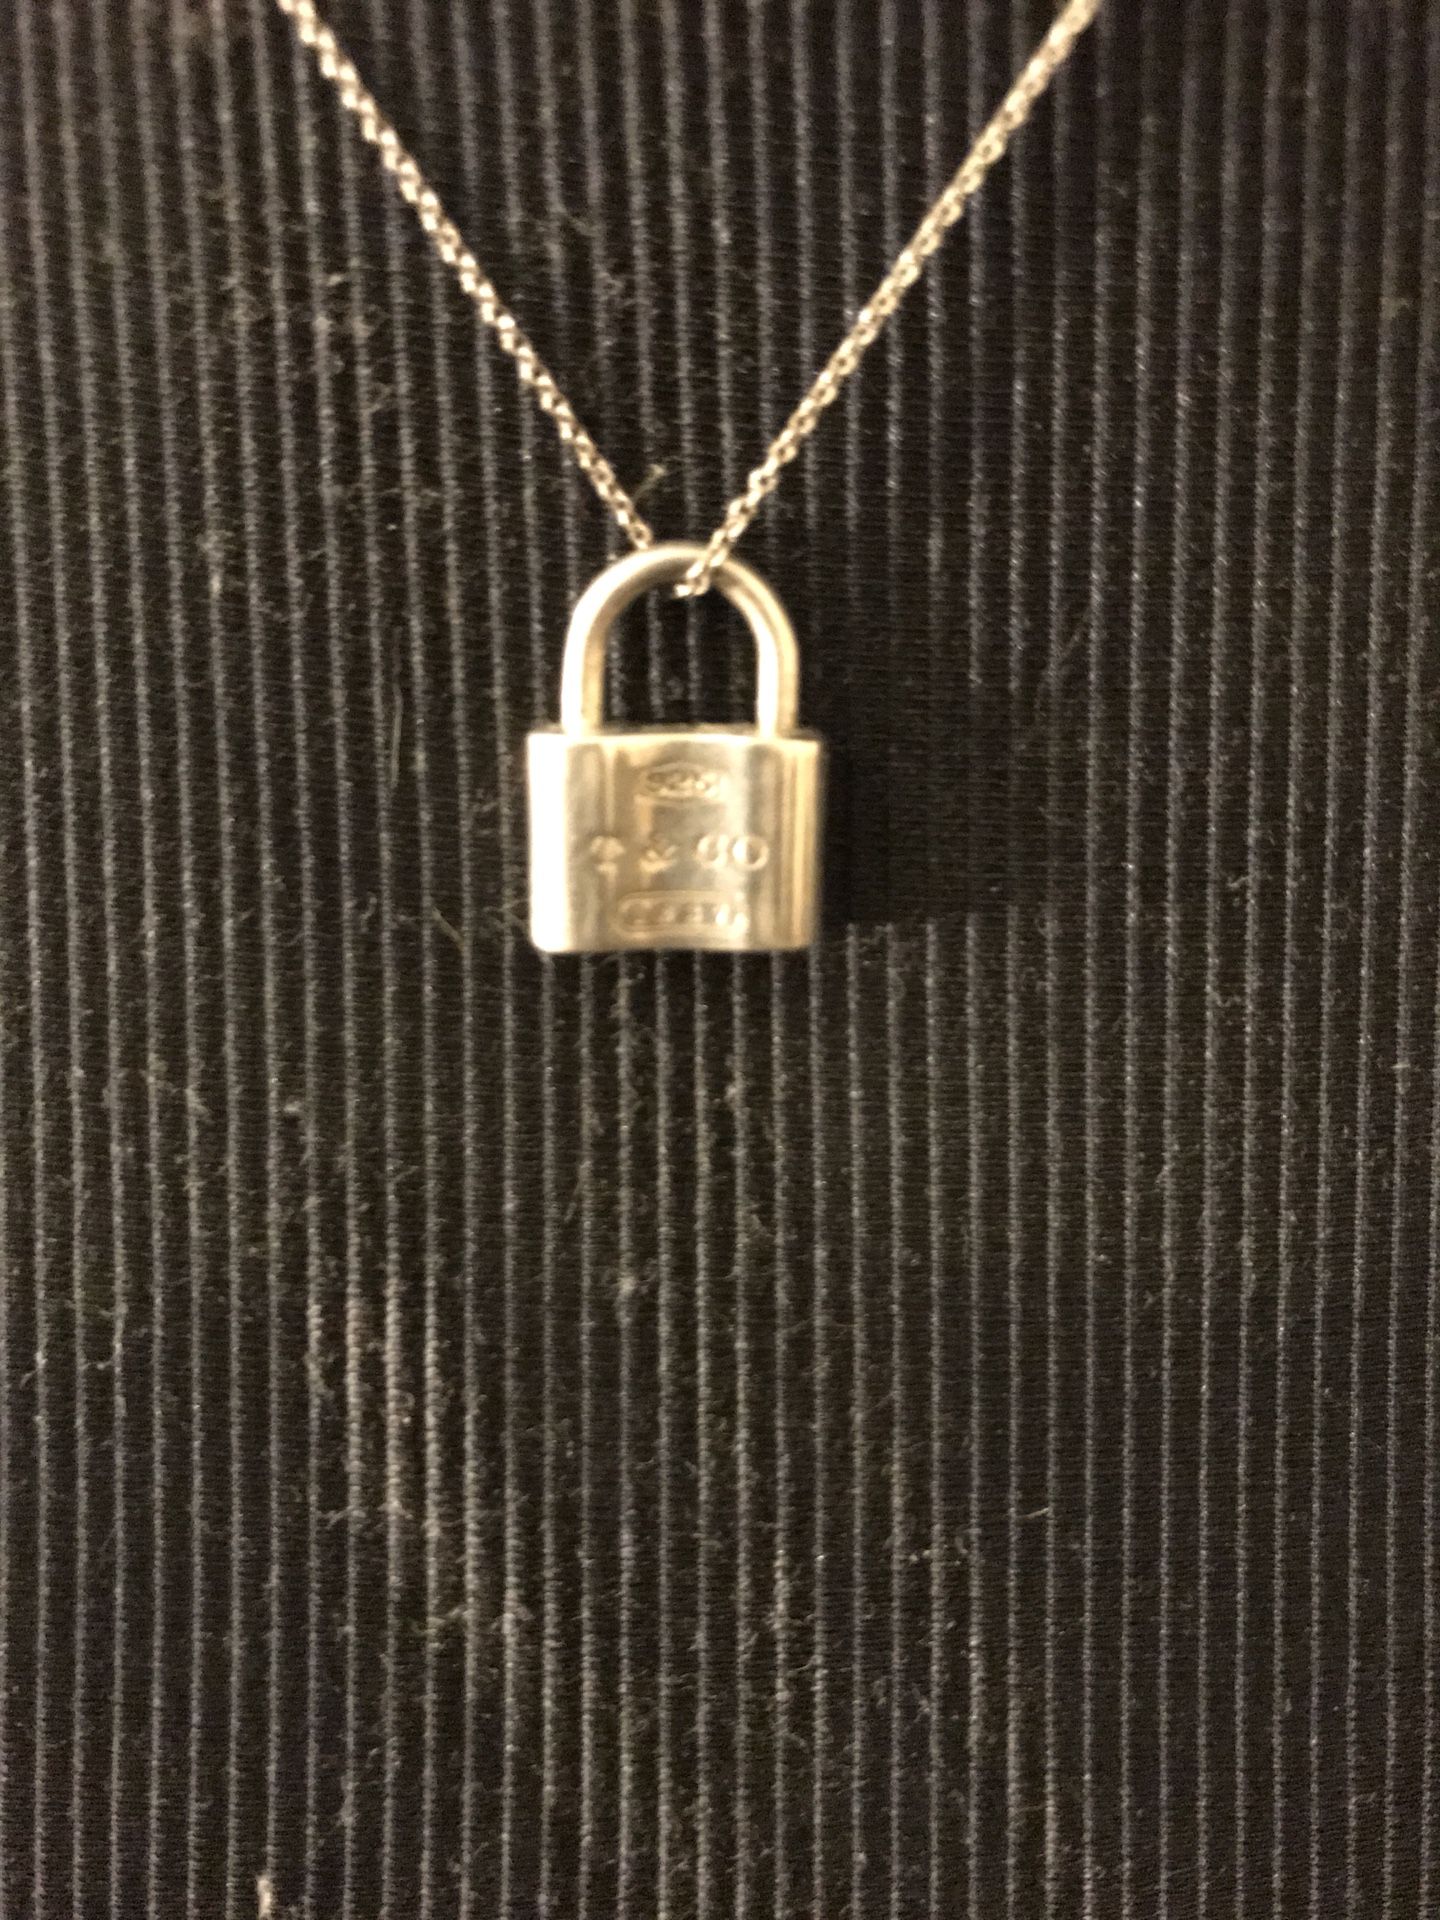 Tiffany & co. Padlock necklace locket